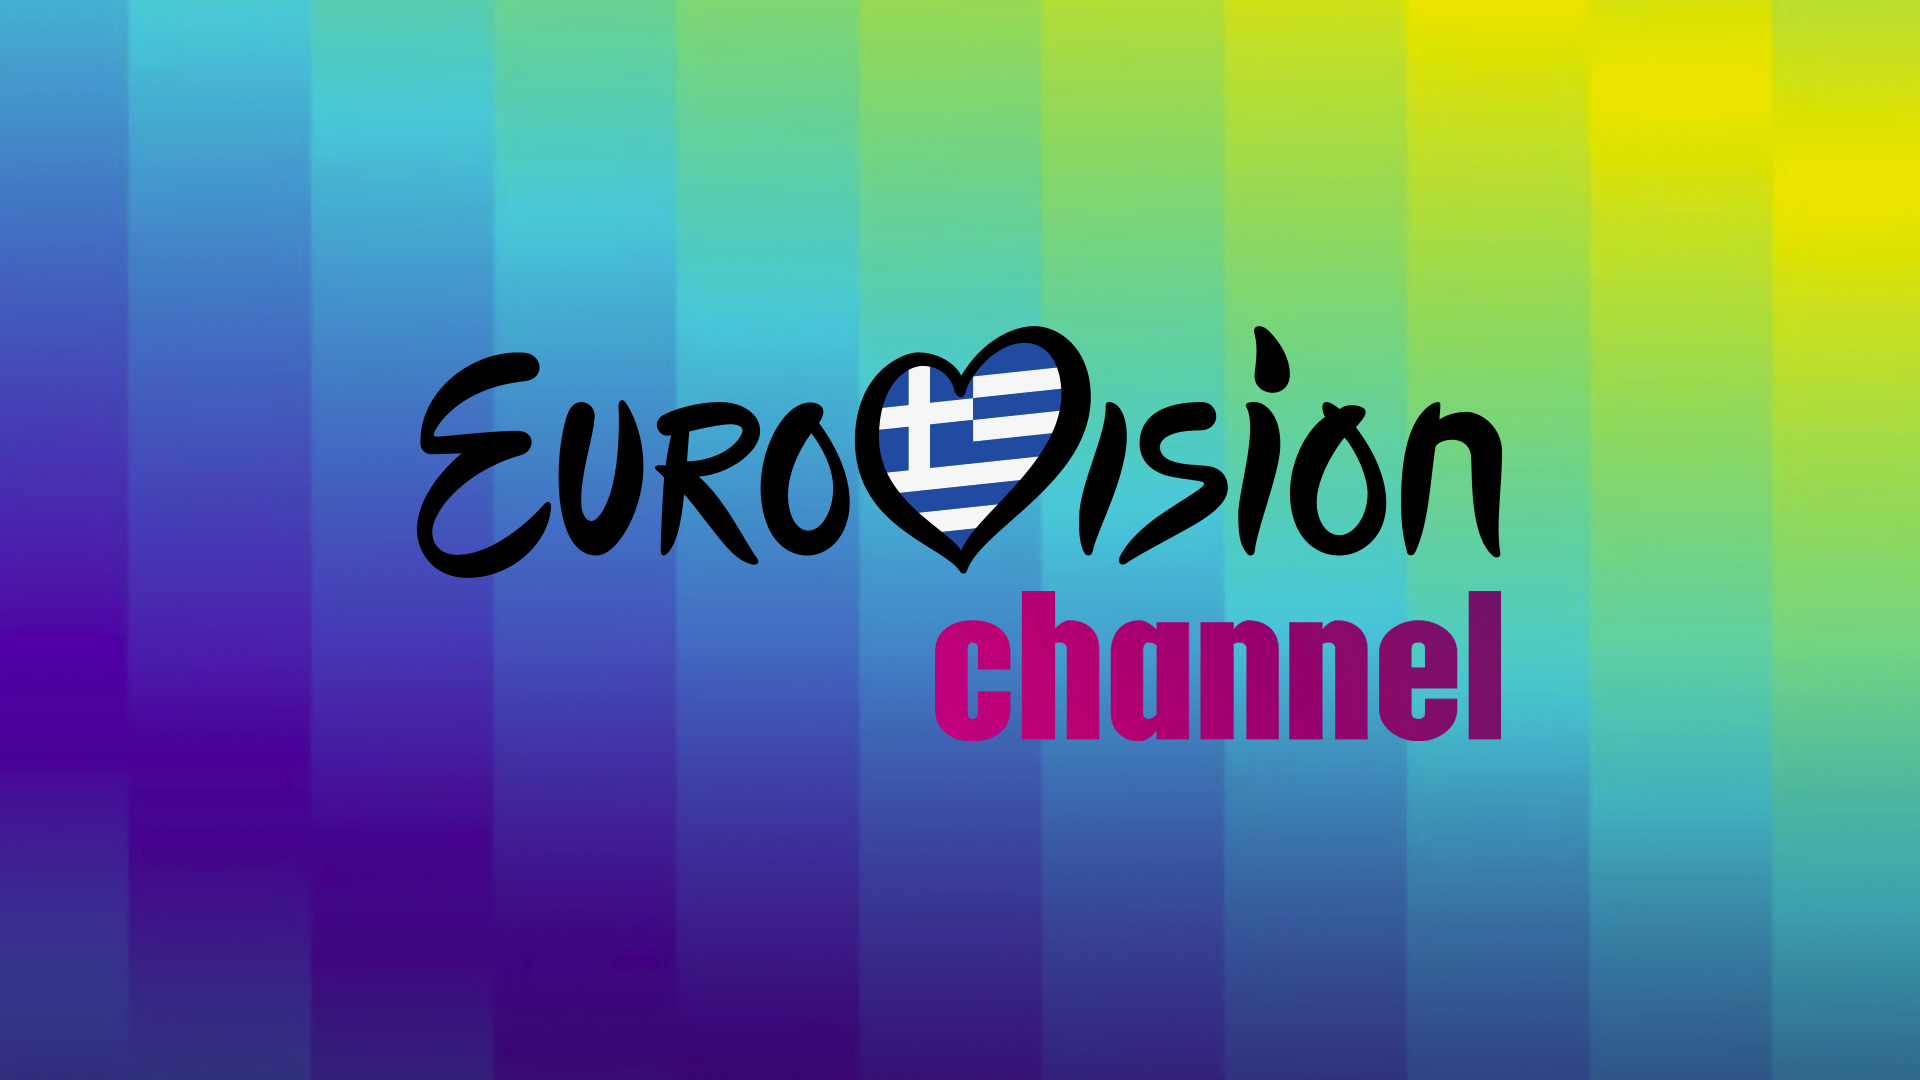 Το Δελτίο Τύπου της ΕΡΤ για το νεοσυσταθέν Eurovision Channel!